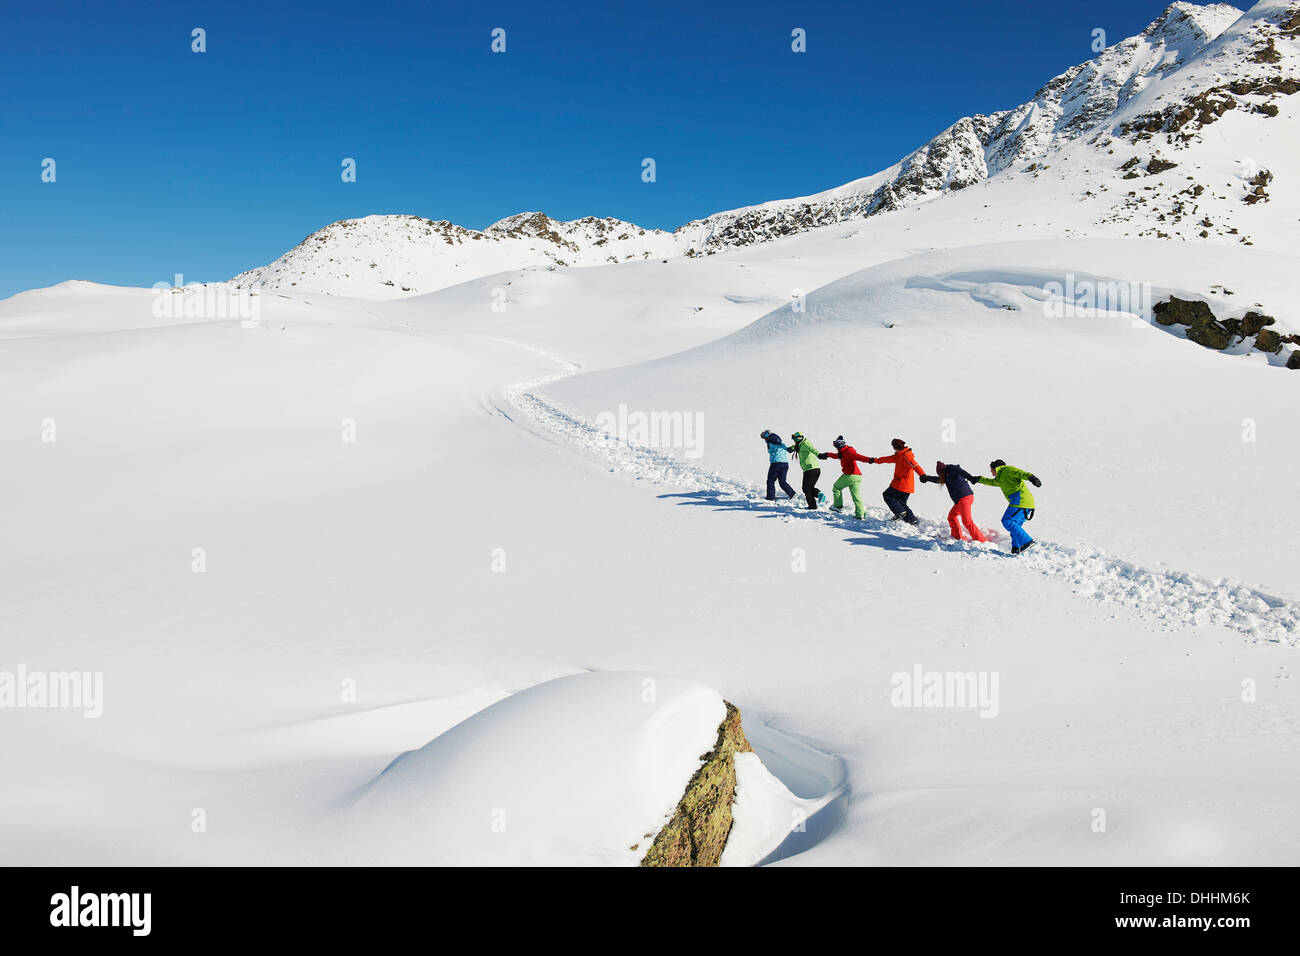 Les amis d'autres tirant chaque montée dans la neige, Kuhtai, Autriche Banque D'Images